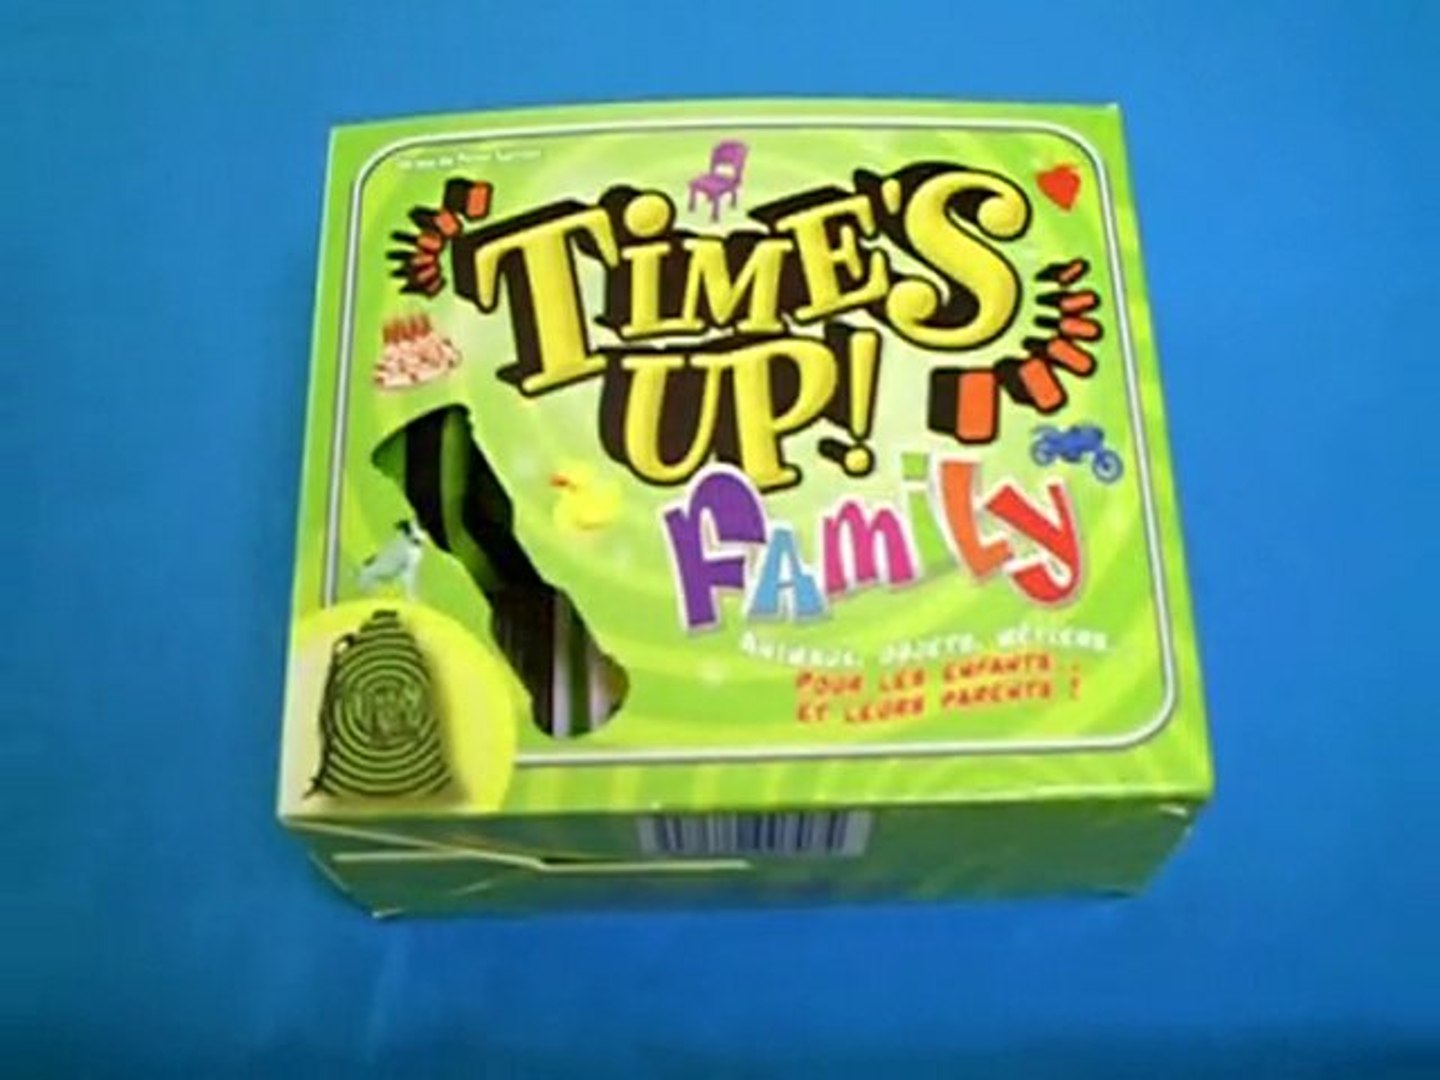 Time's Up ! Family vert